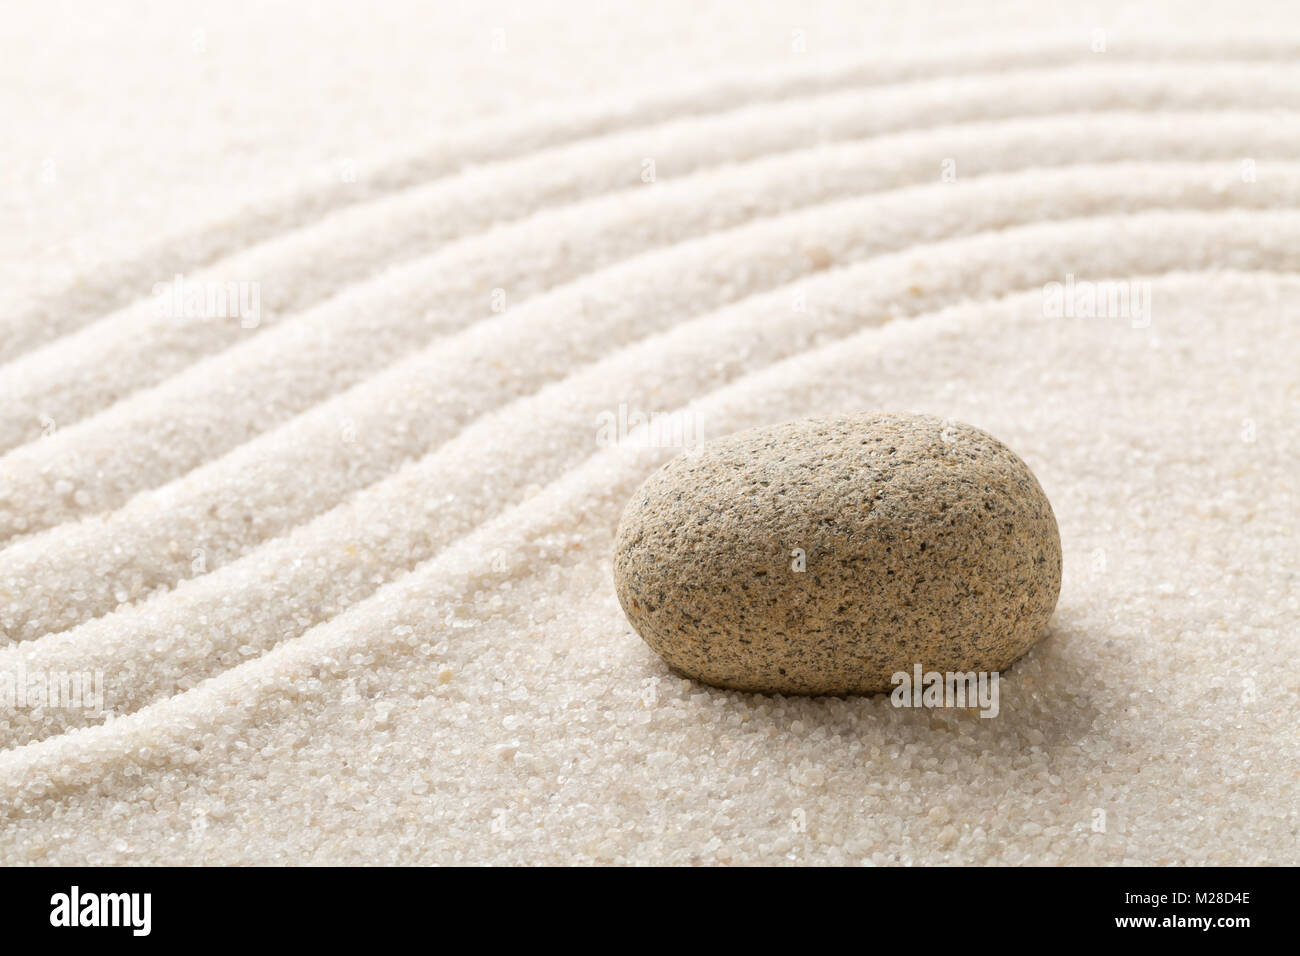 Zen sand und stein Garten mit Raked geschwungene Linien mit selektiven Fokus. Einfachheit, Konzentration oder Stille abstrakte Konzept Stockfoto